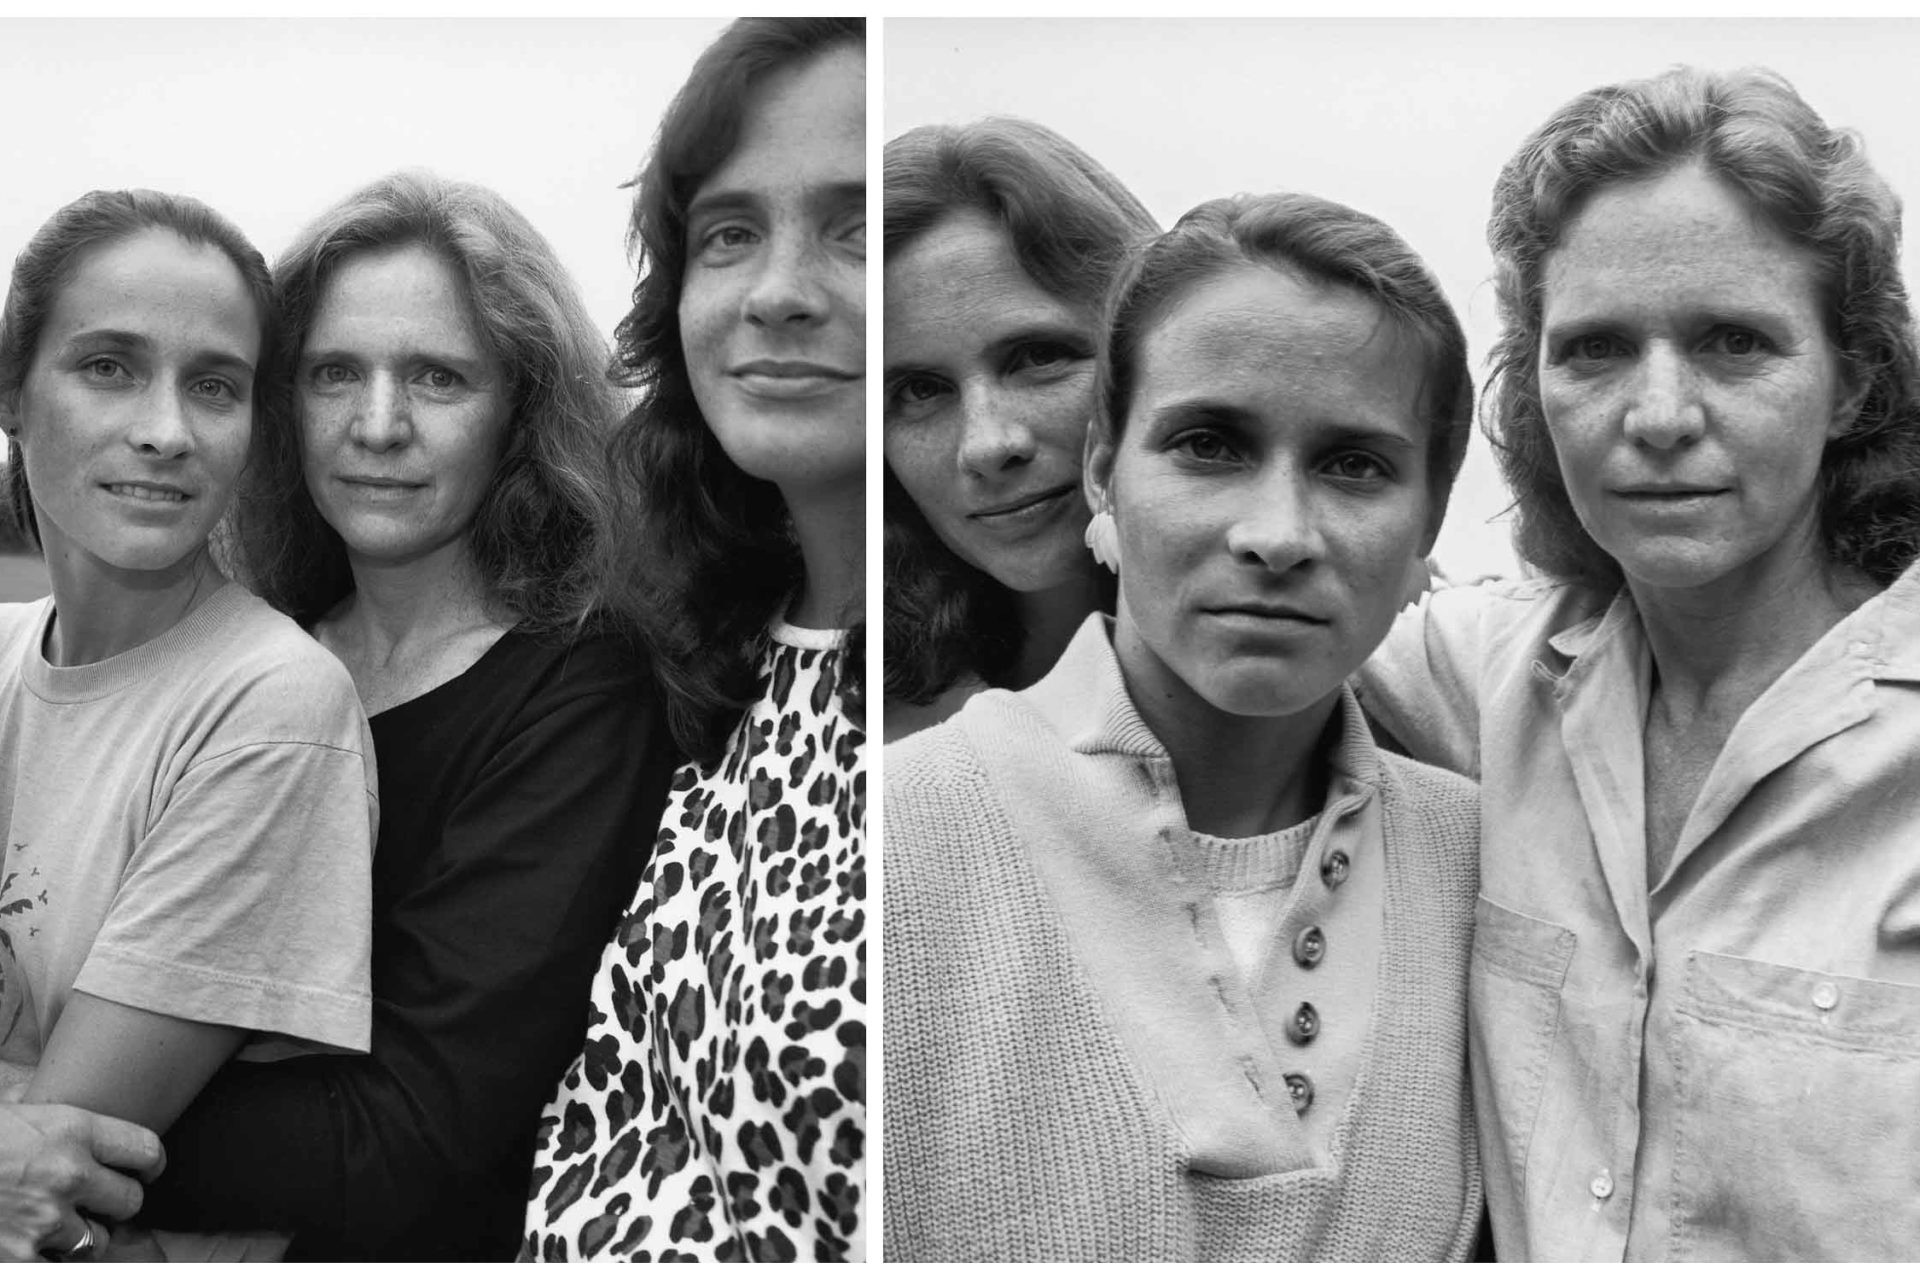 Nicholas Nixon photographie 4 soeurs pendant 40 ans